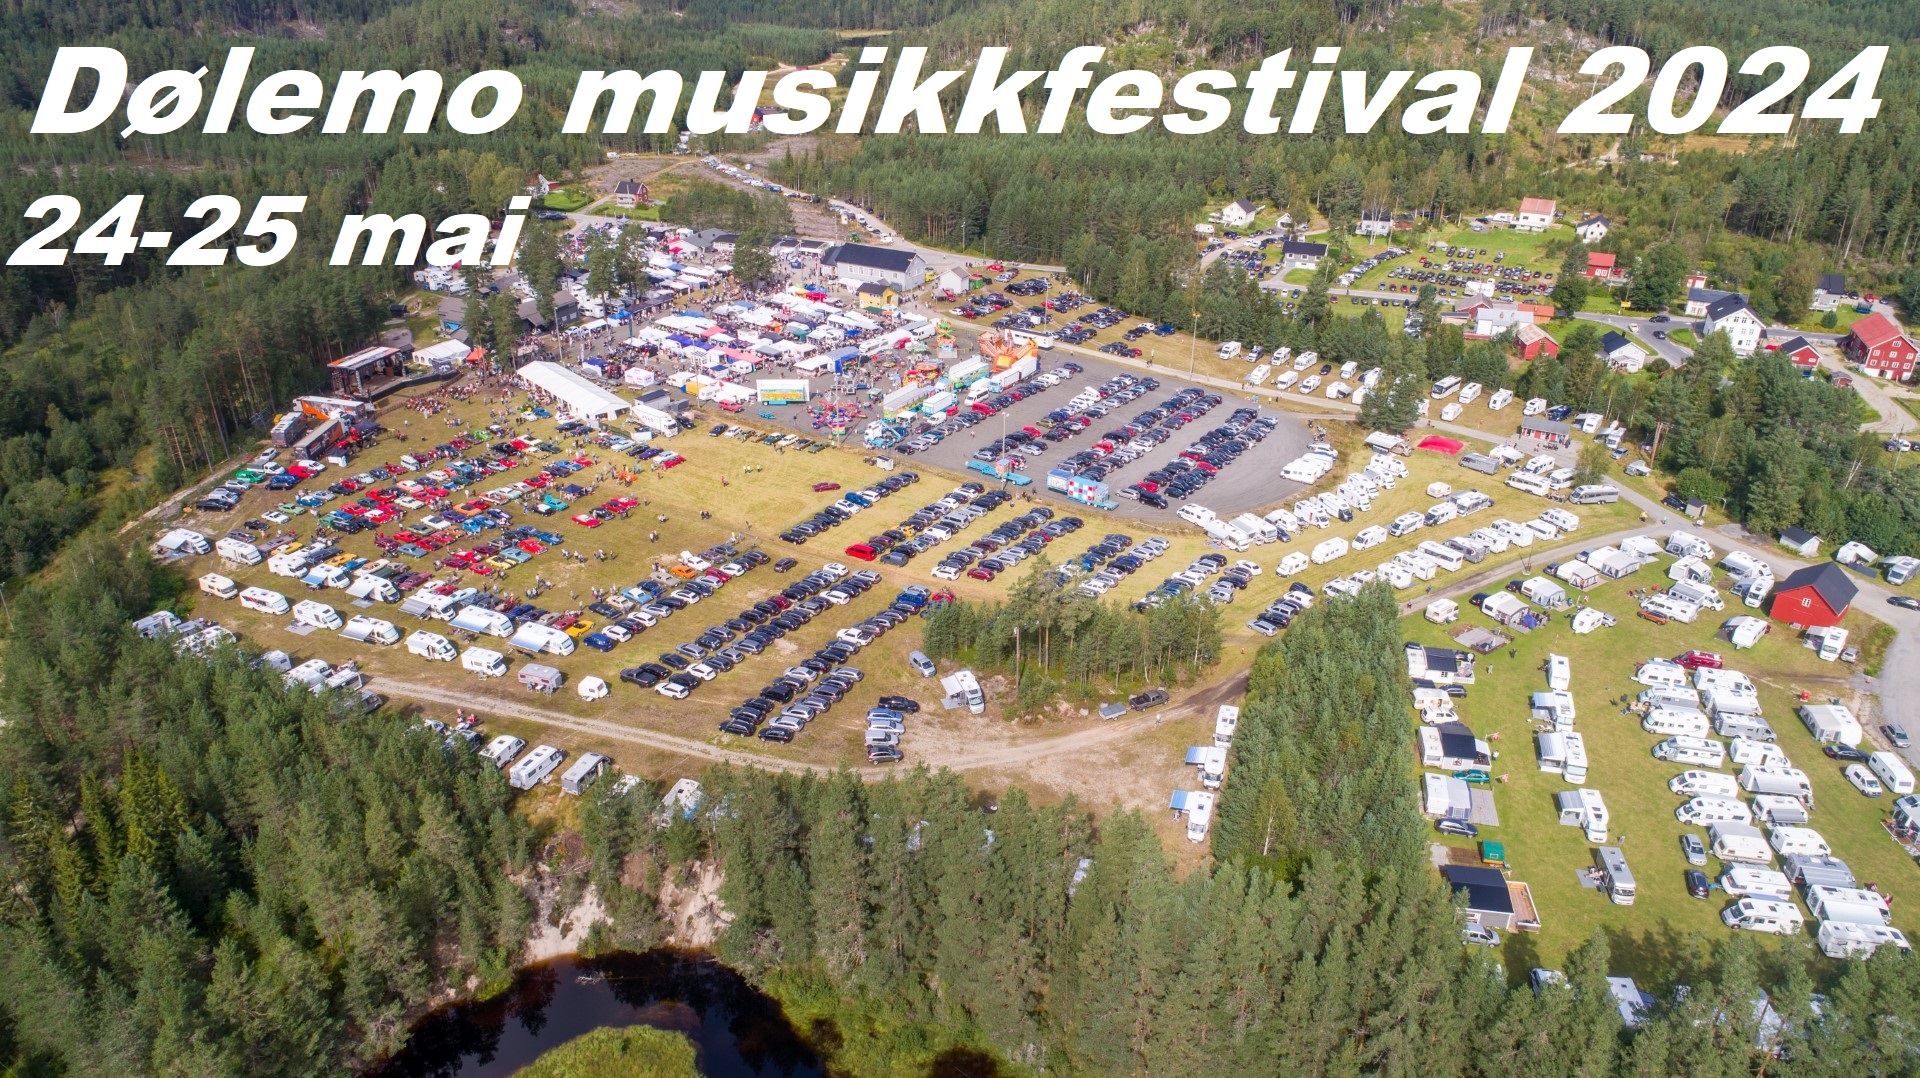 Dølemo musikkfestival for nett